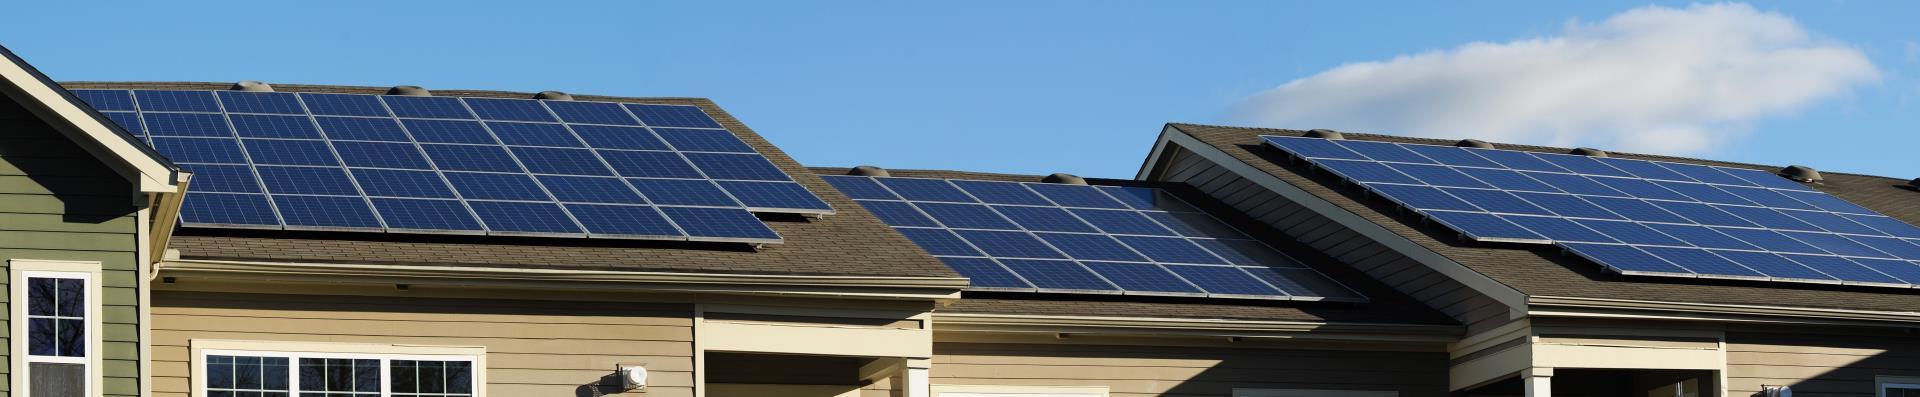 清洁能源_太阳能电池板